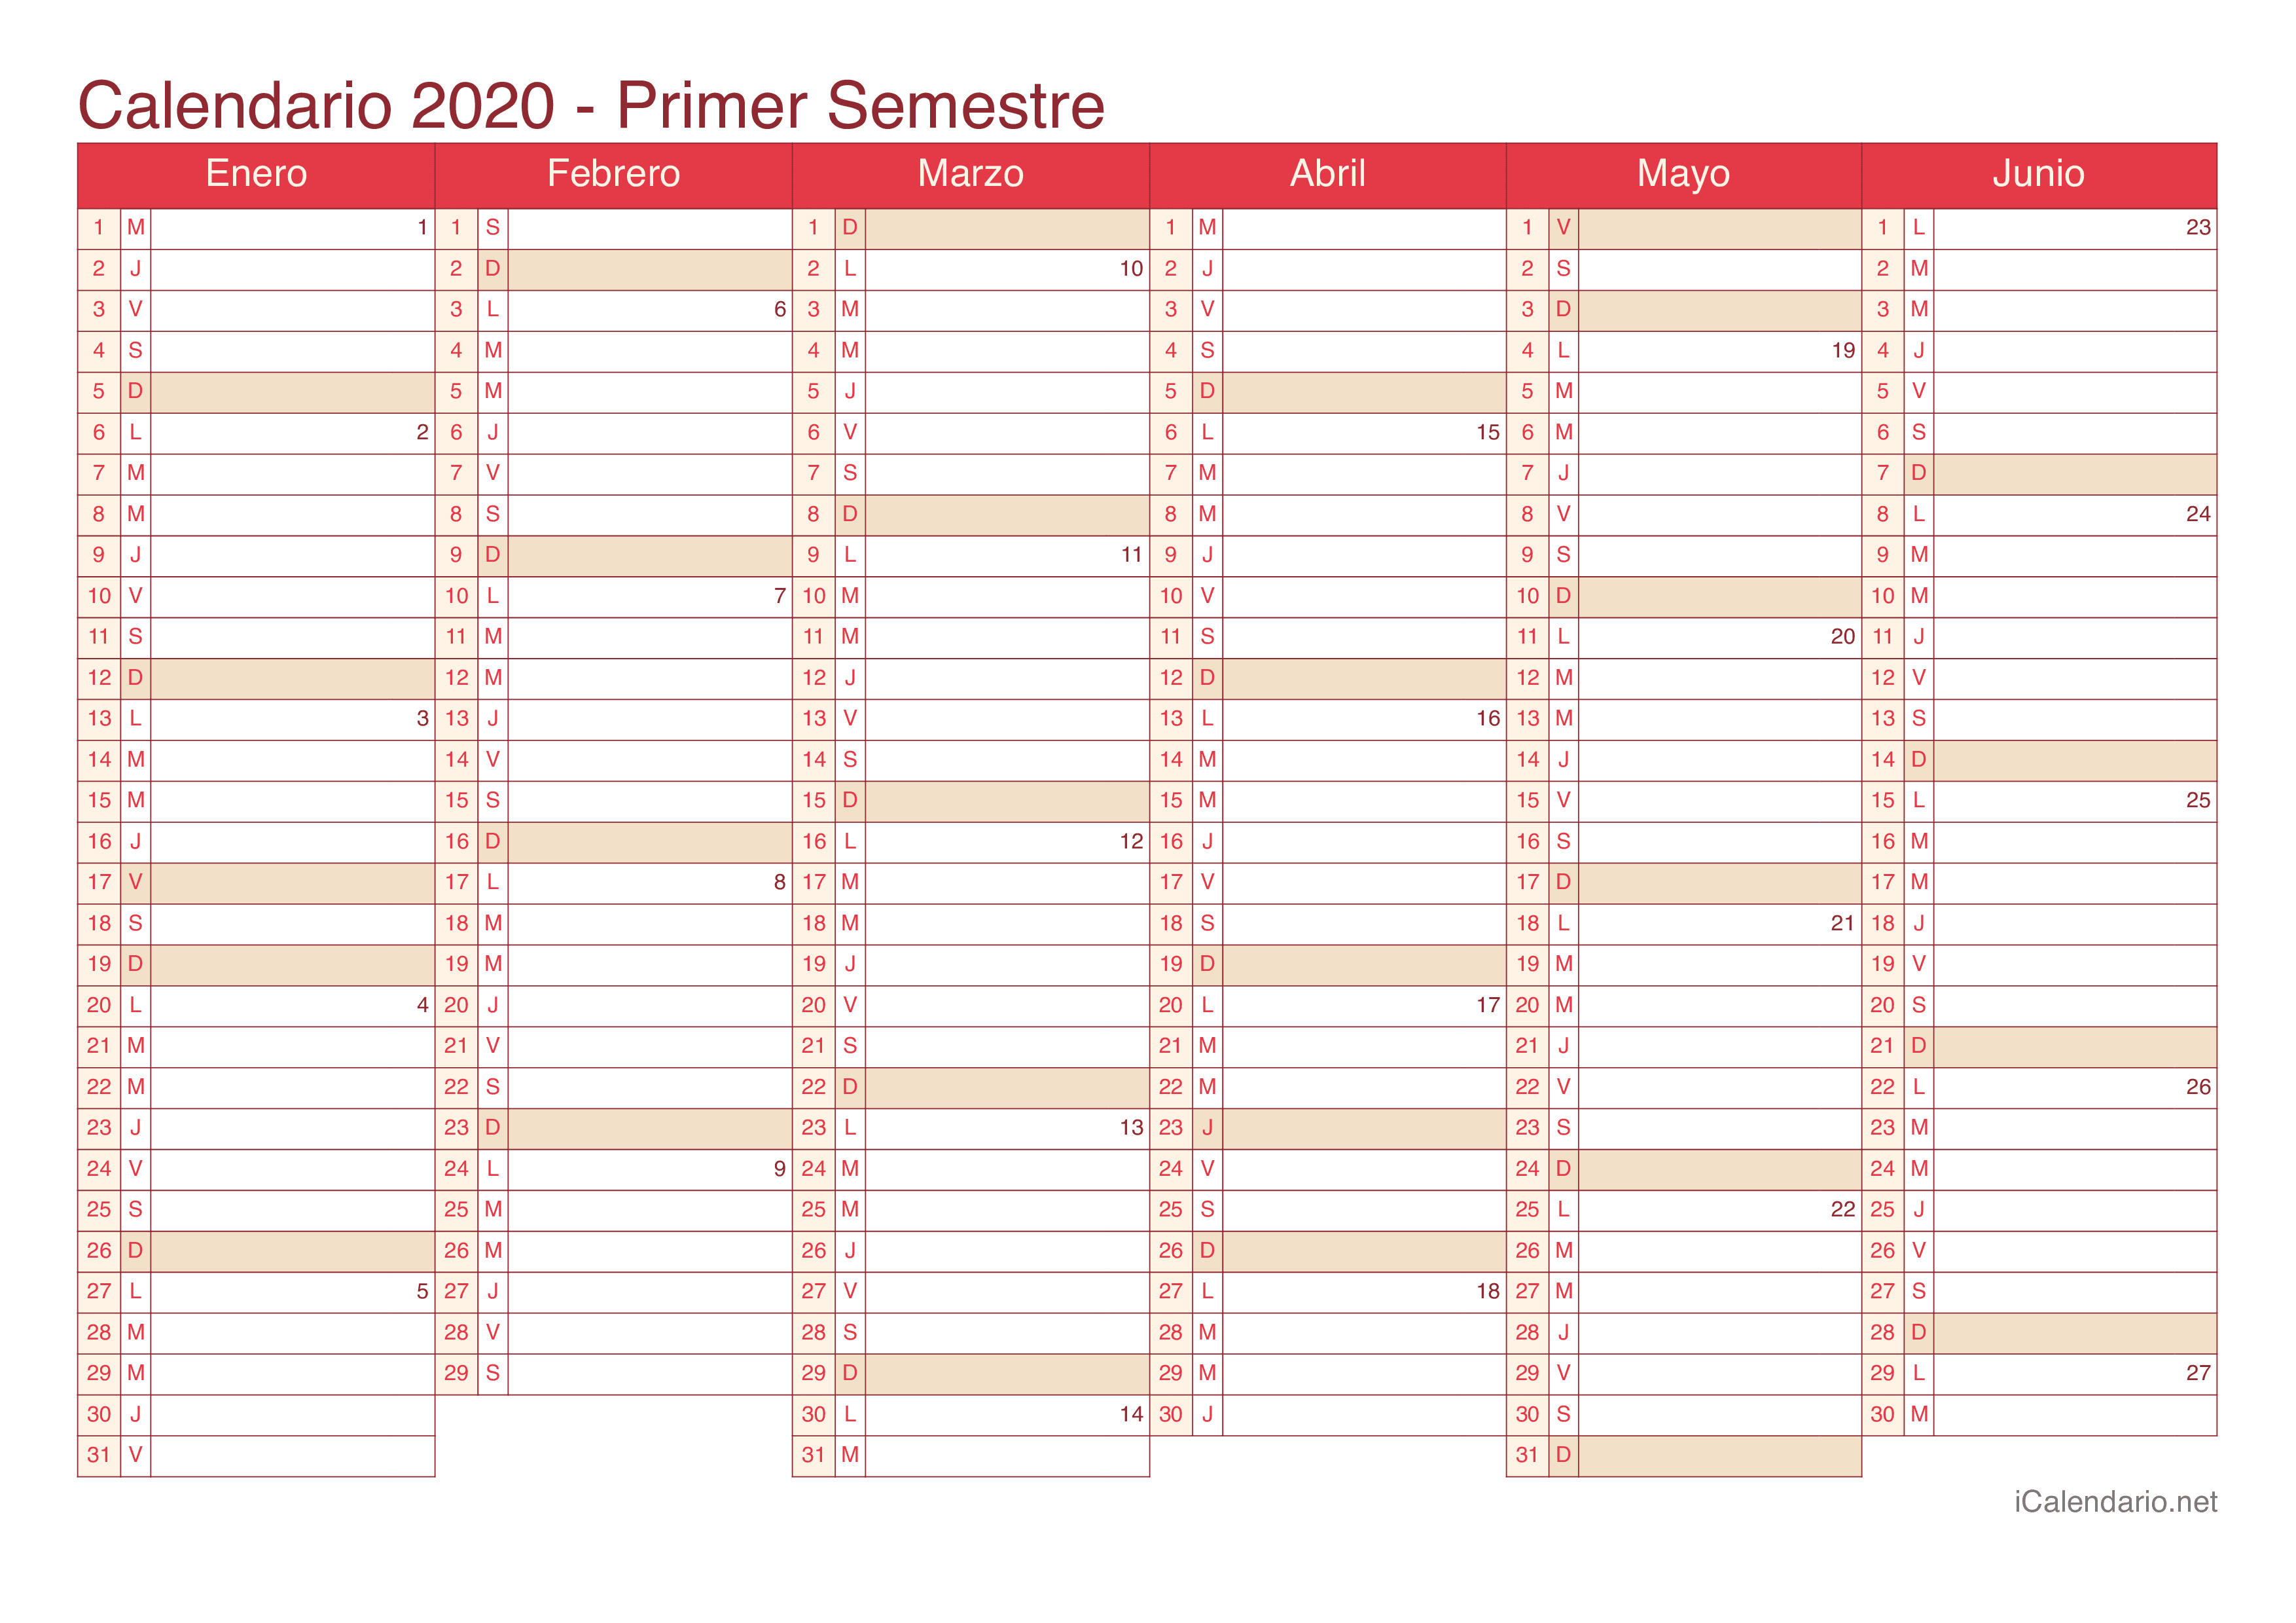 Calendario por semestre com números da semana 2020 - Cherry